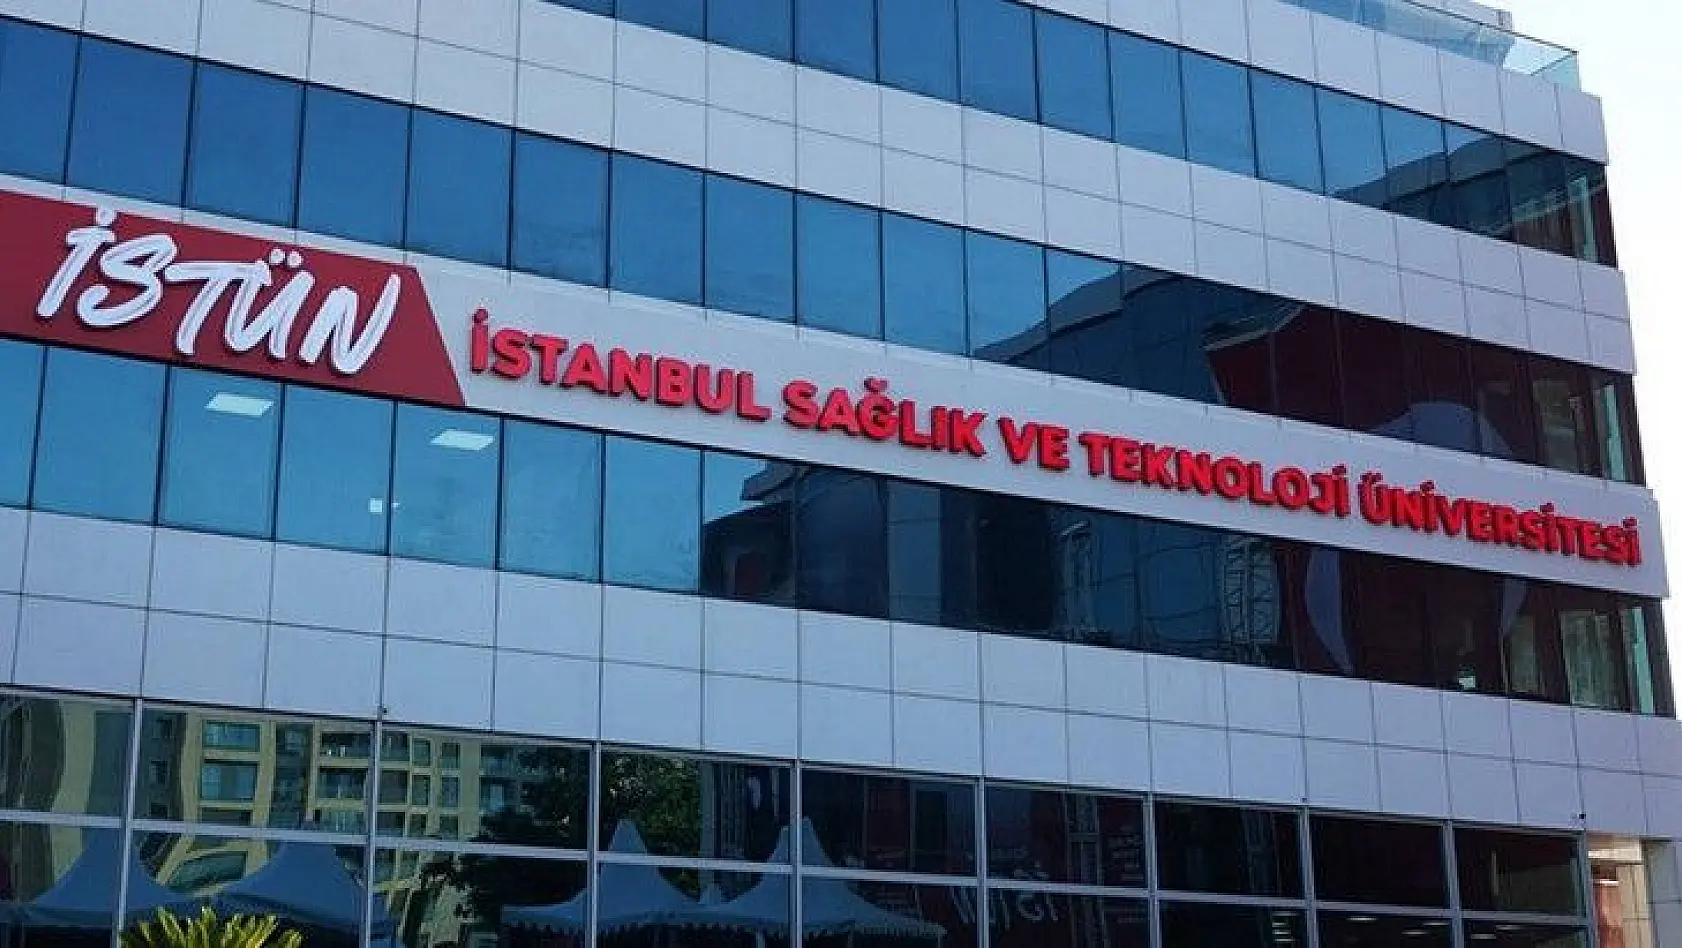 İstanbul Sağlık ve Teknoloji Üniversitesi 26 Öğretim Üyesi alıyor